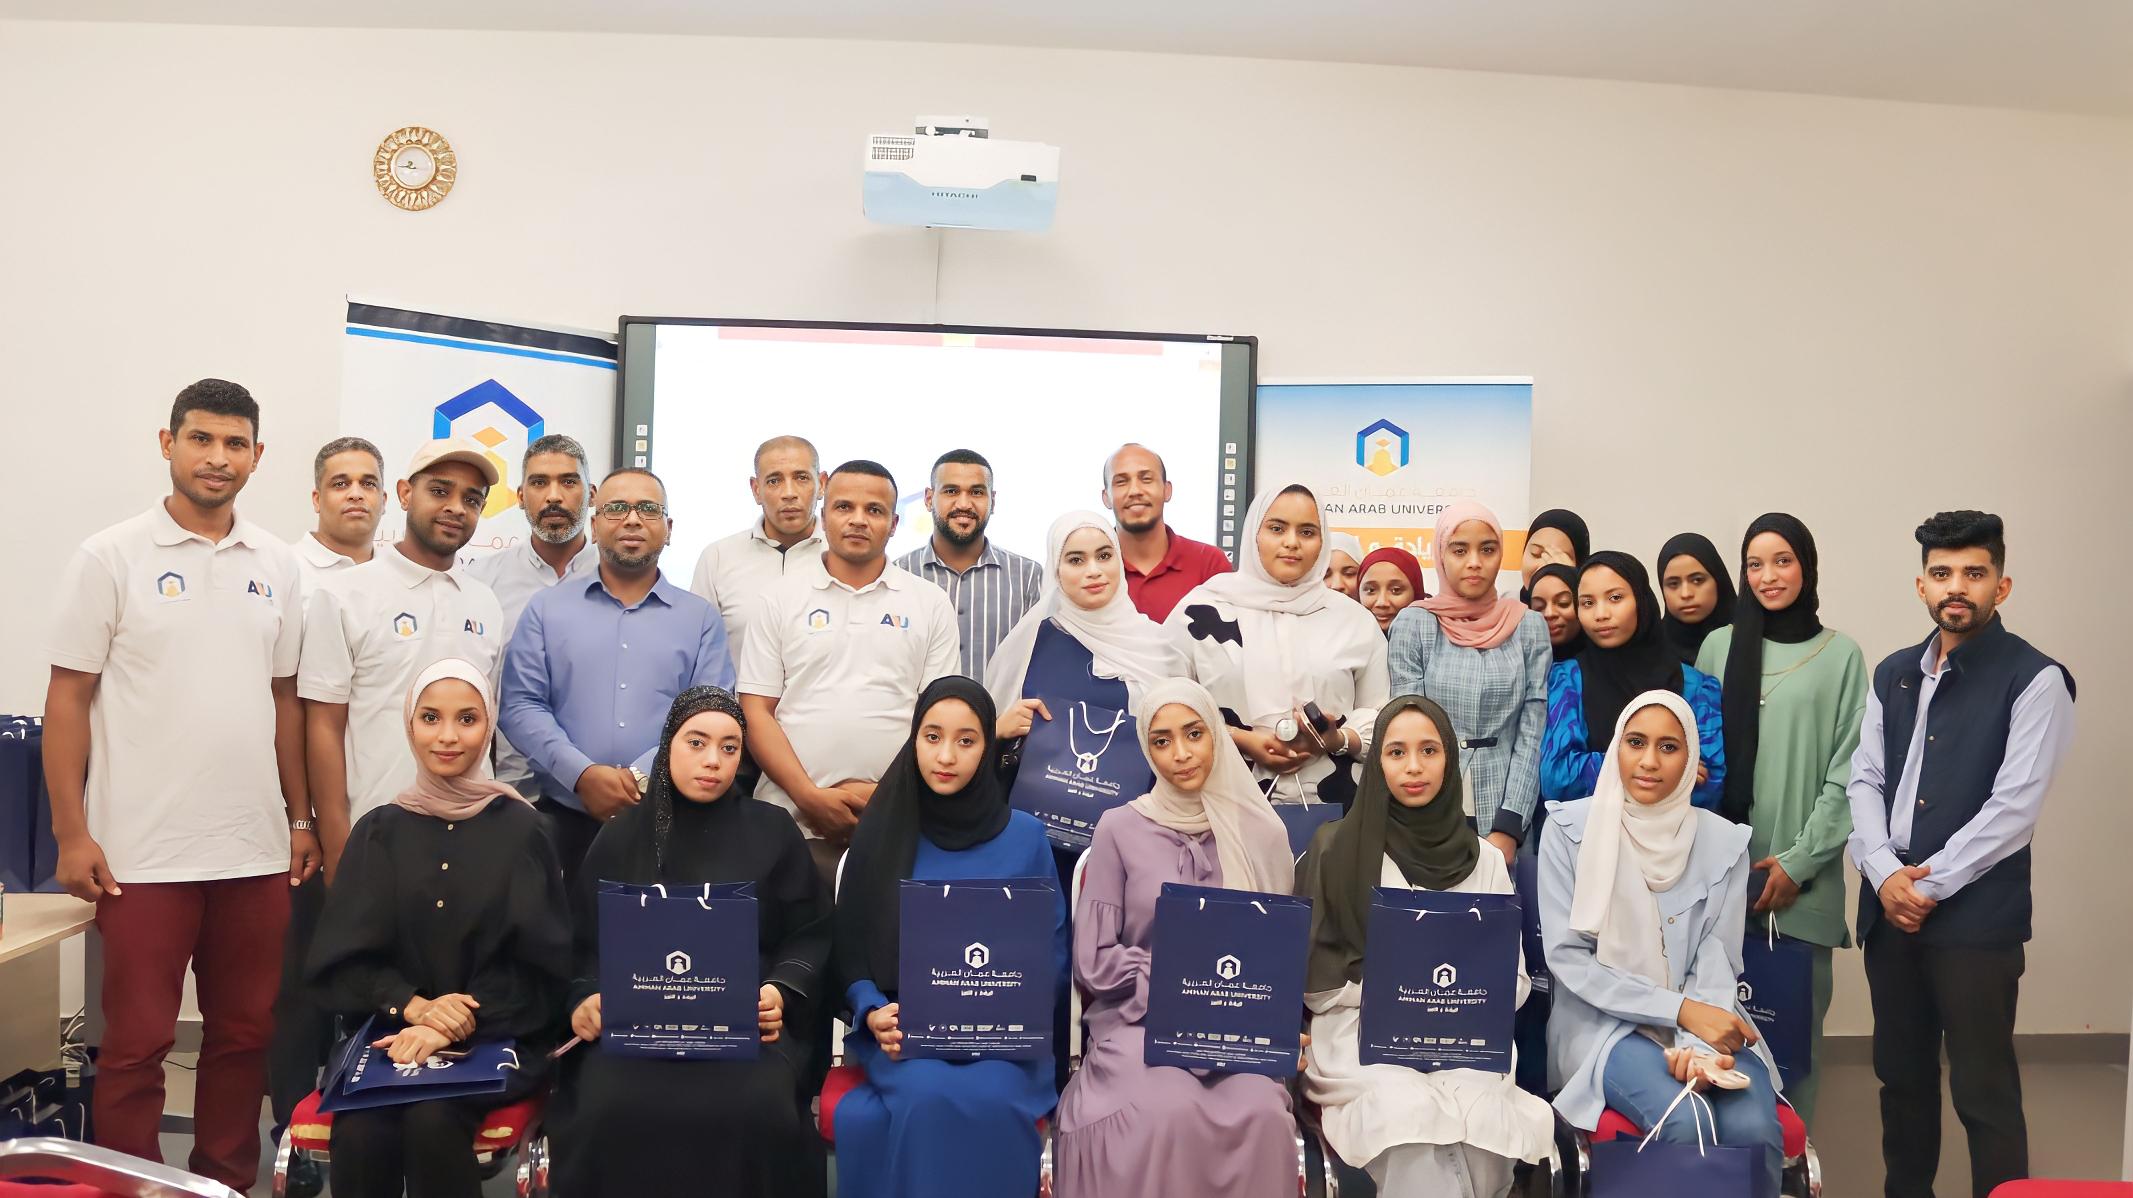 طلبة جامعة عمّان العربية بالتعاون مع مركز زها الثقافي يطلقان مبادرة (عينك على المستقبل مع AAU)4